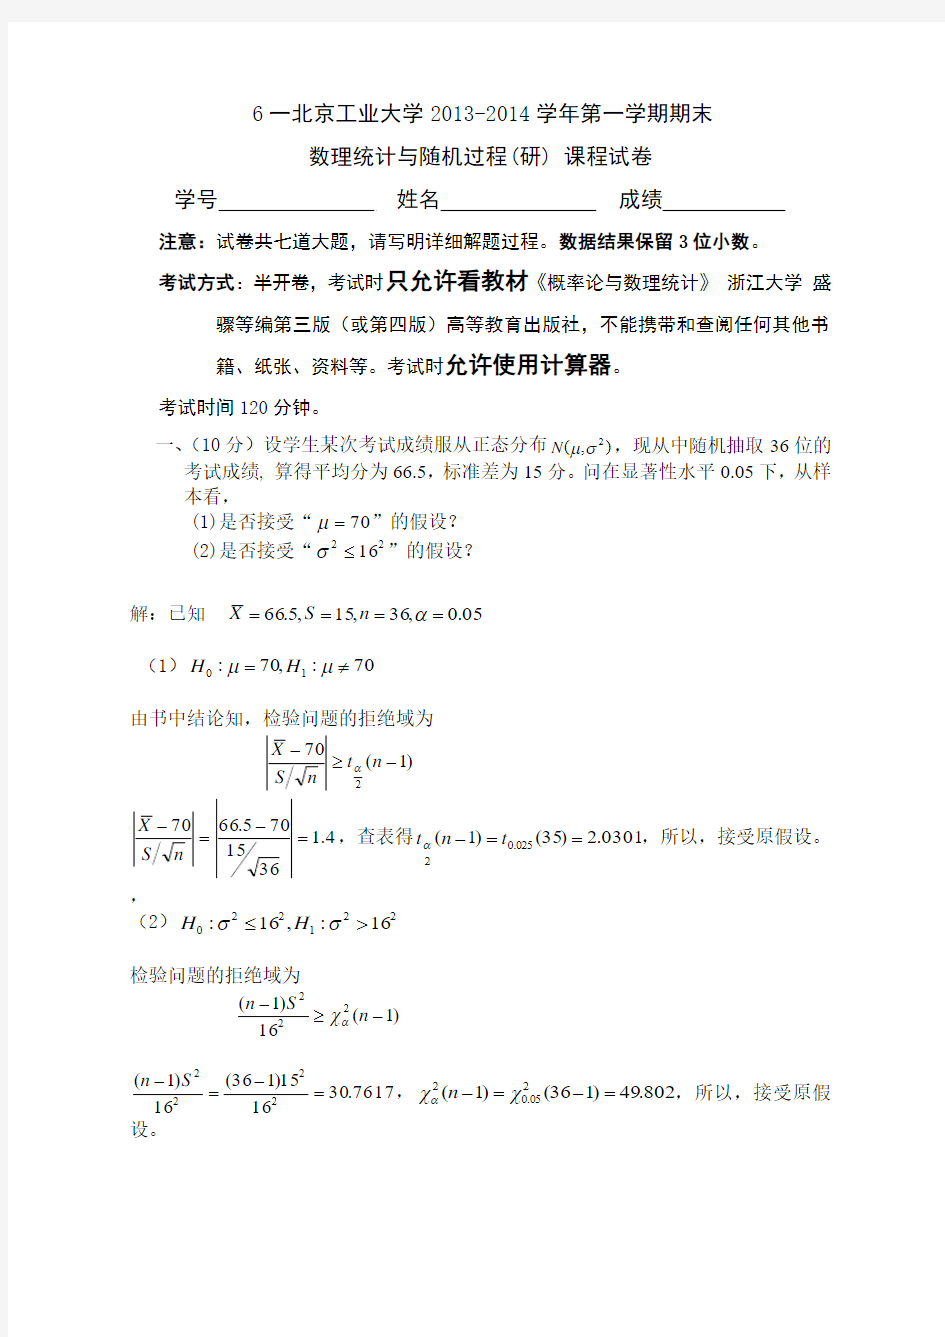 北京工业大学2013-2014概率论与数理统计考题答案